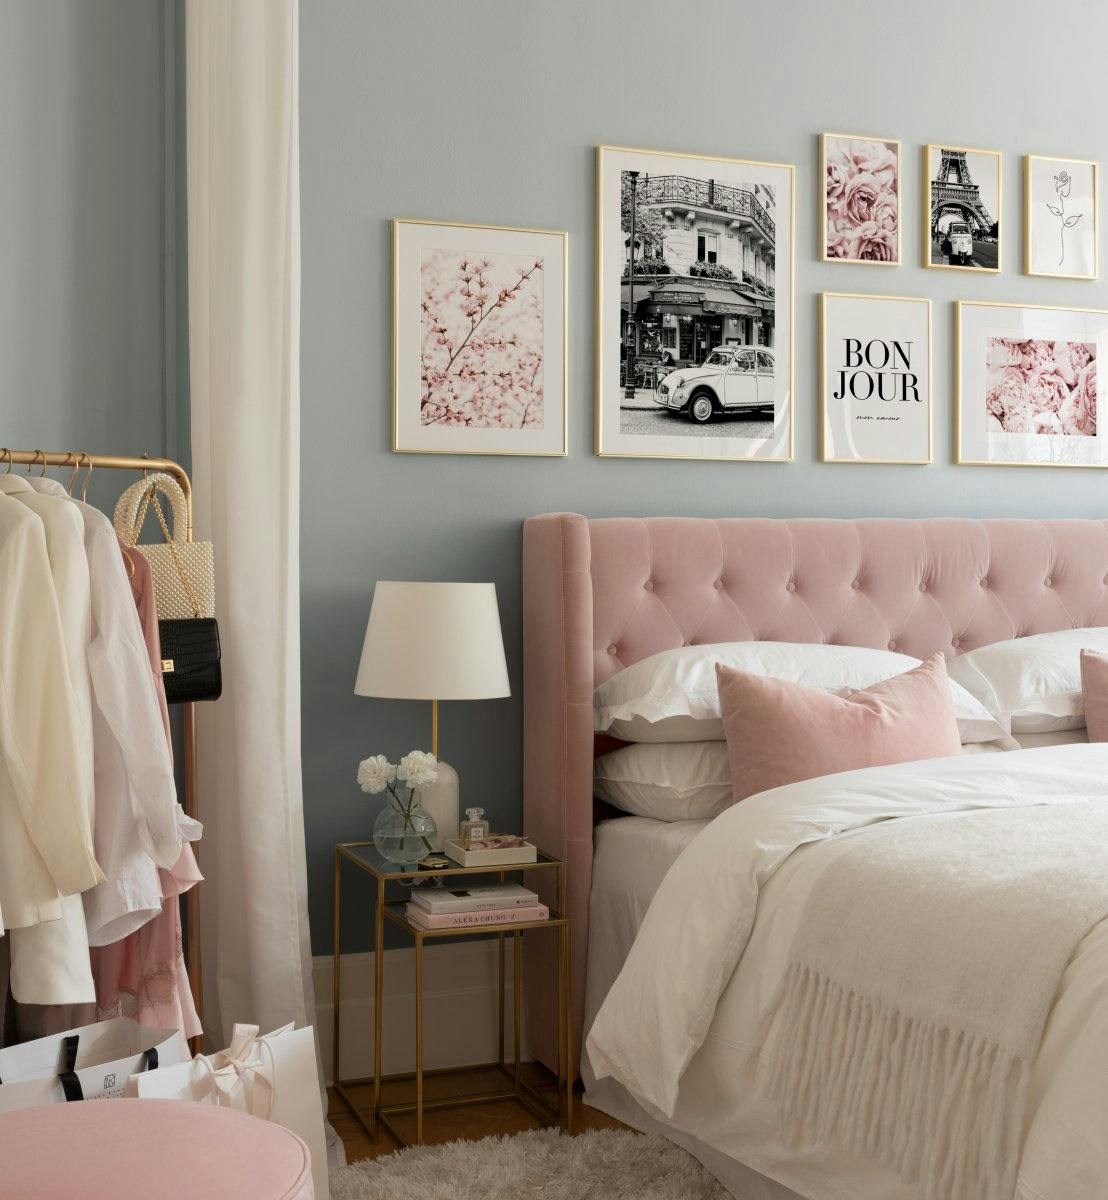 モノクロとピンクのポスターを寝室に